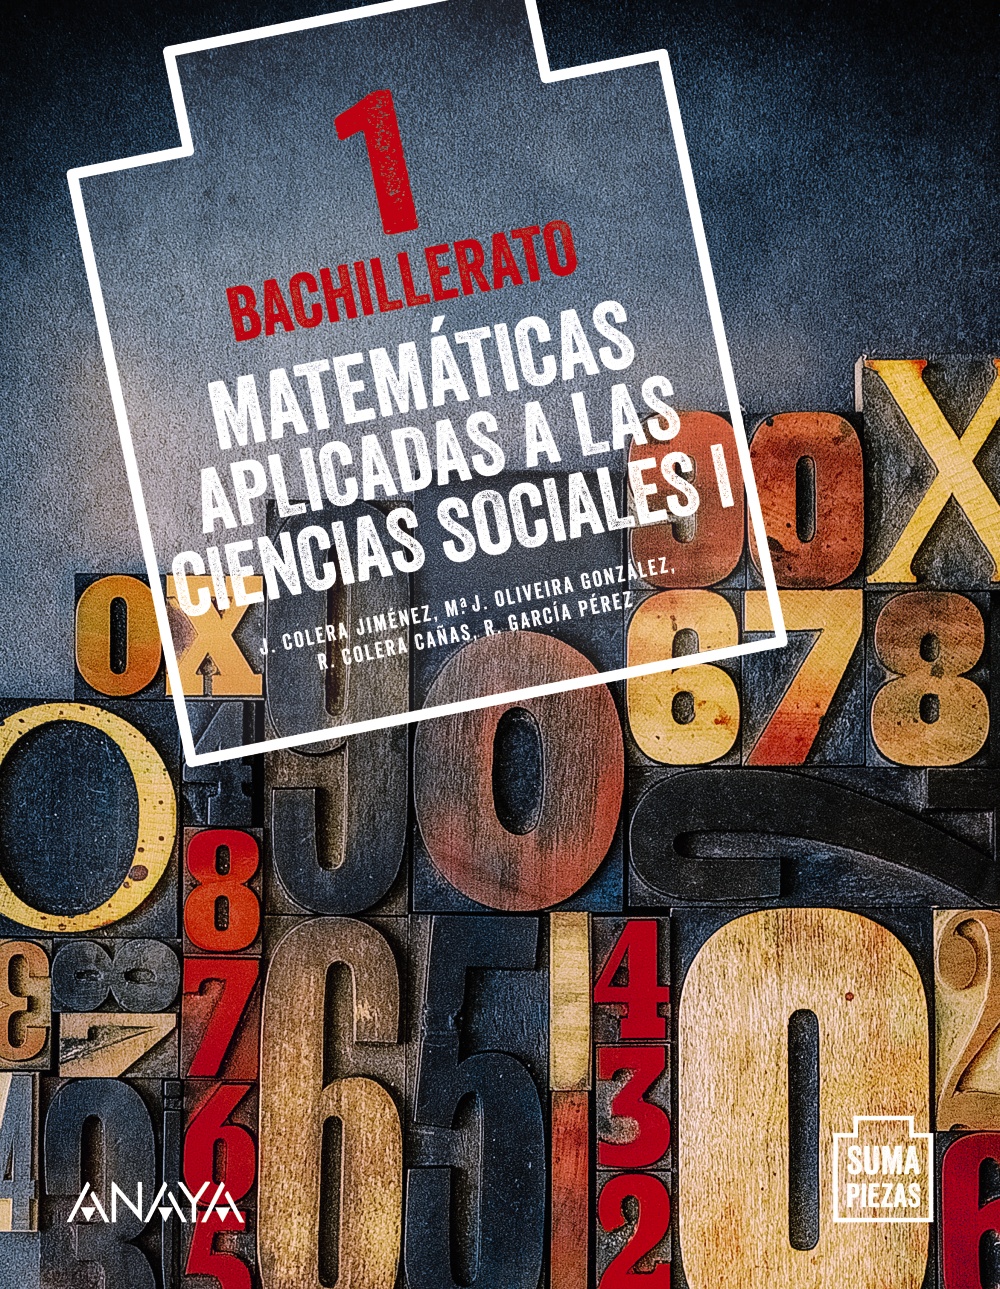 Solucionario Matematicas Aplicadas a las Ciencias Sociales 1 Bachillerato Anaya Suma Piezas PDF Ejercicios Resueltos-pdf